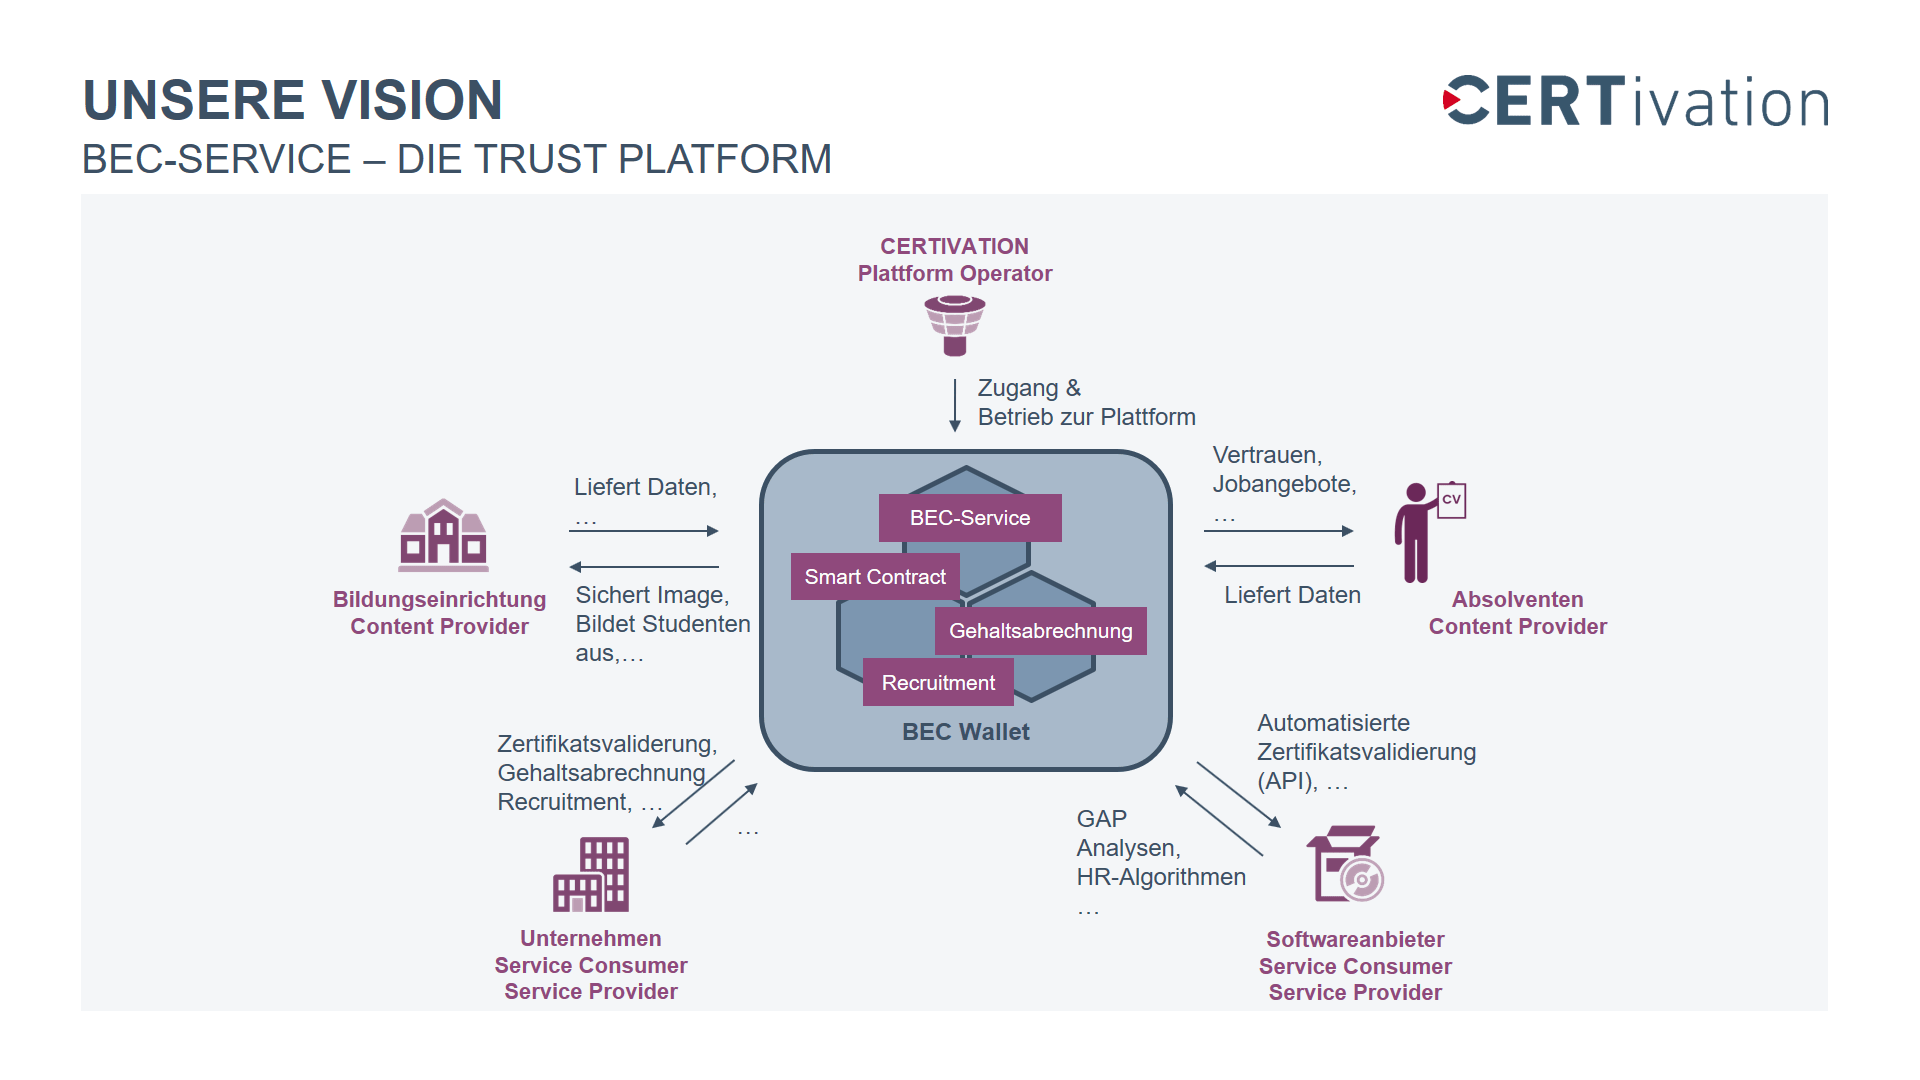 Unsere Vision BEC-Service - Die Trust Platform